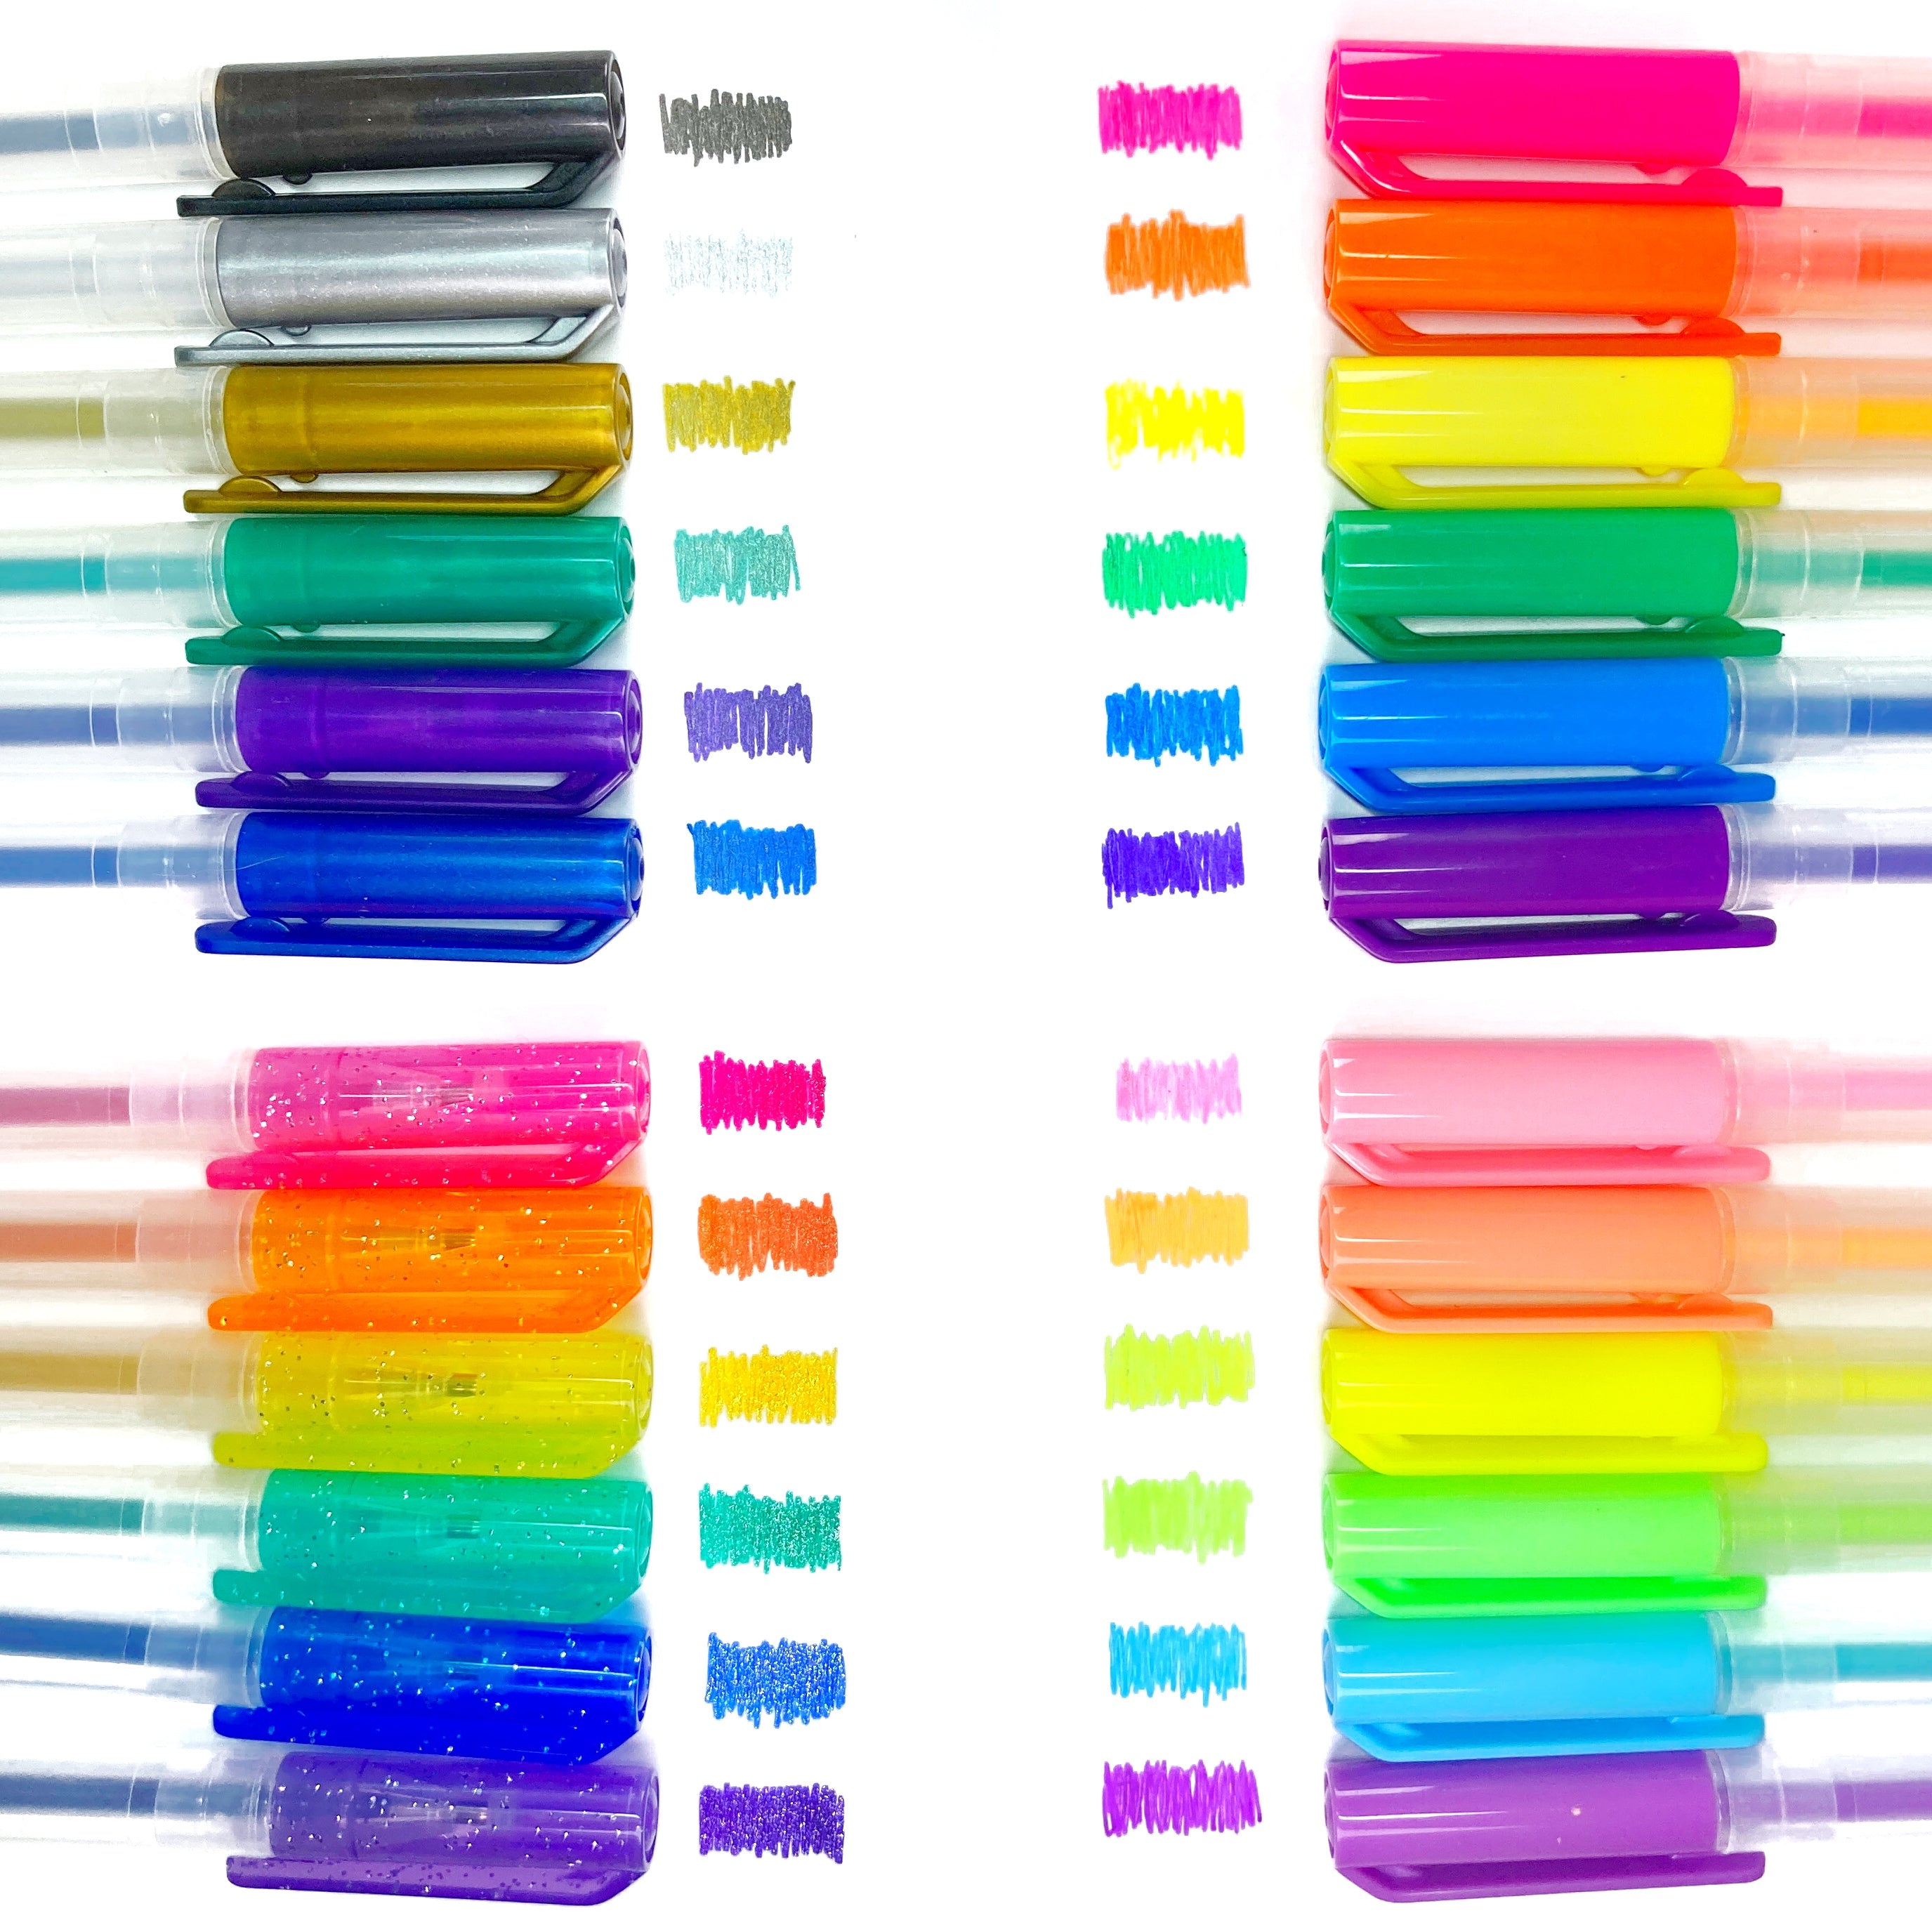 Rainbow Glitter Pen, Assortment, 1 Each